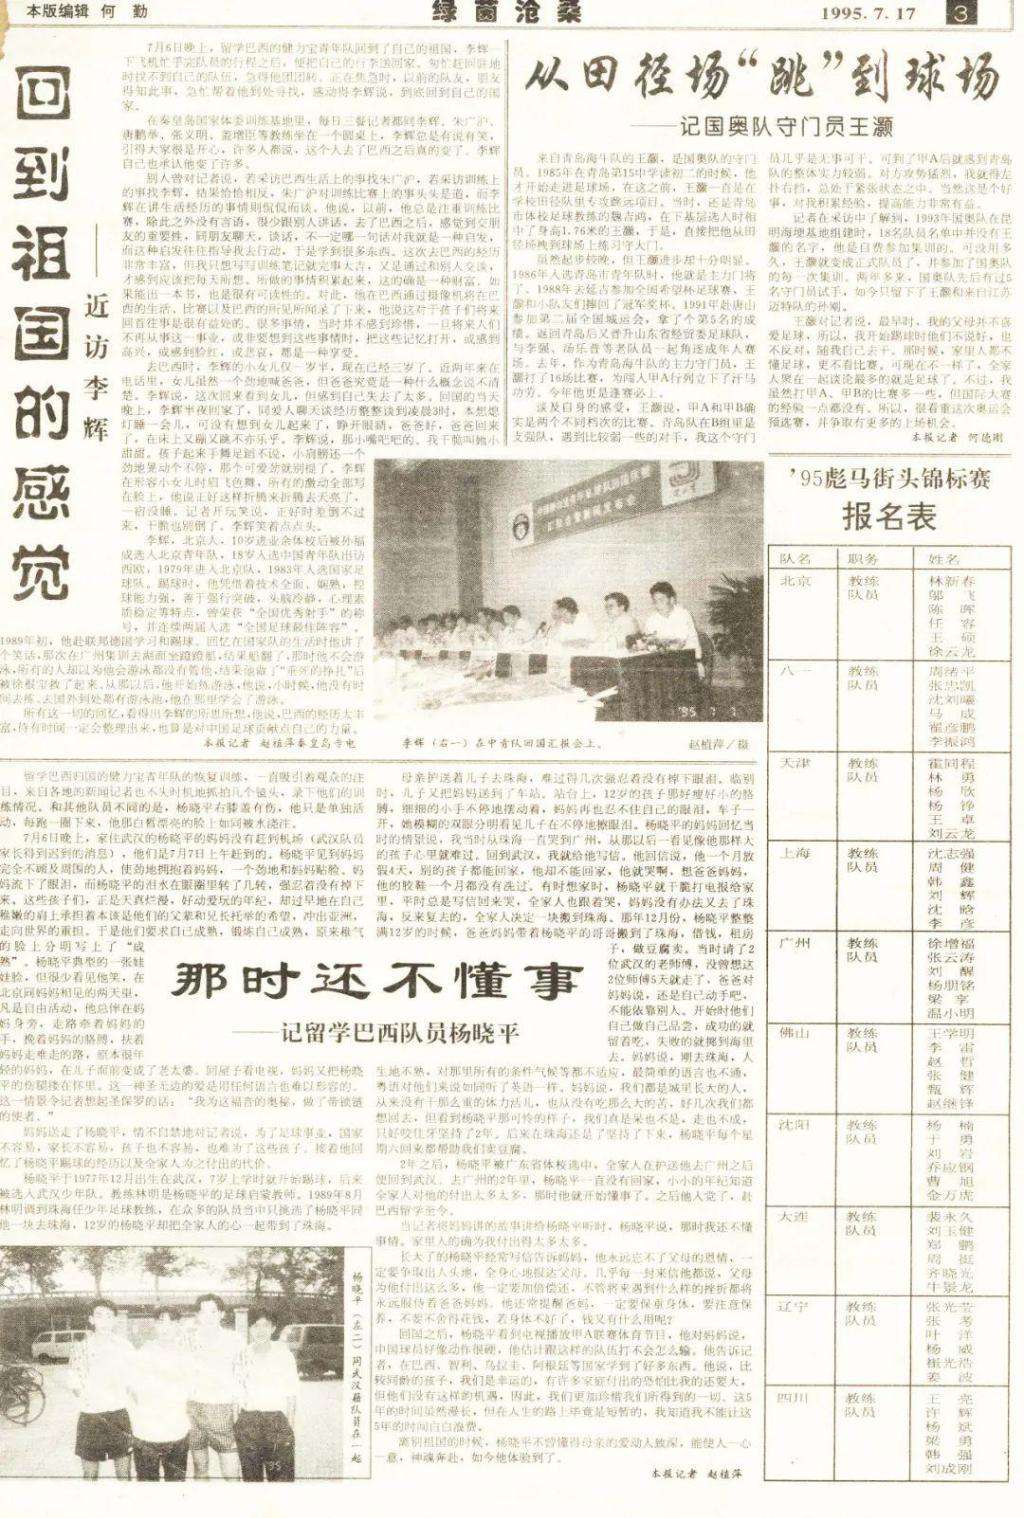 健力宝青年队 赵植萍采访日记：1995年与健力宝青年队球员父母一起陪伴年轻球员